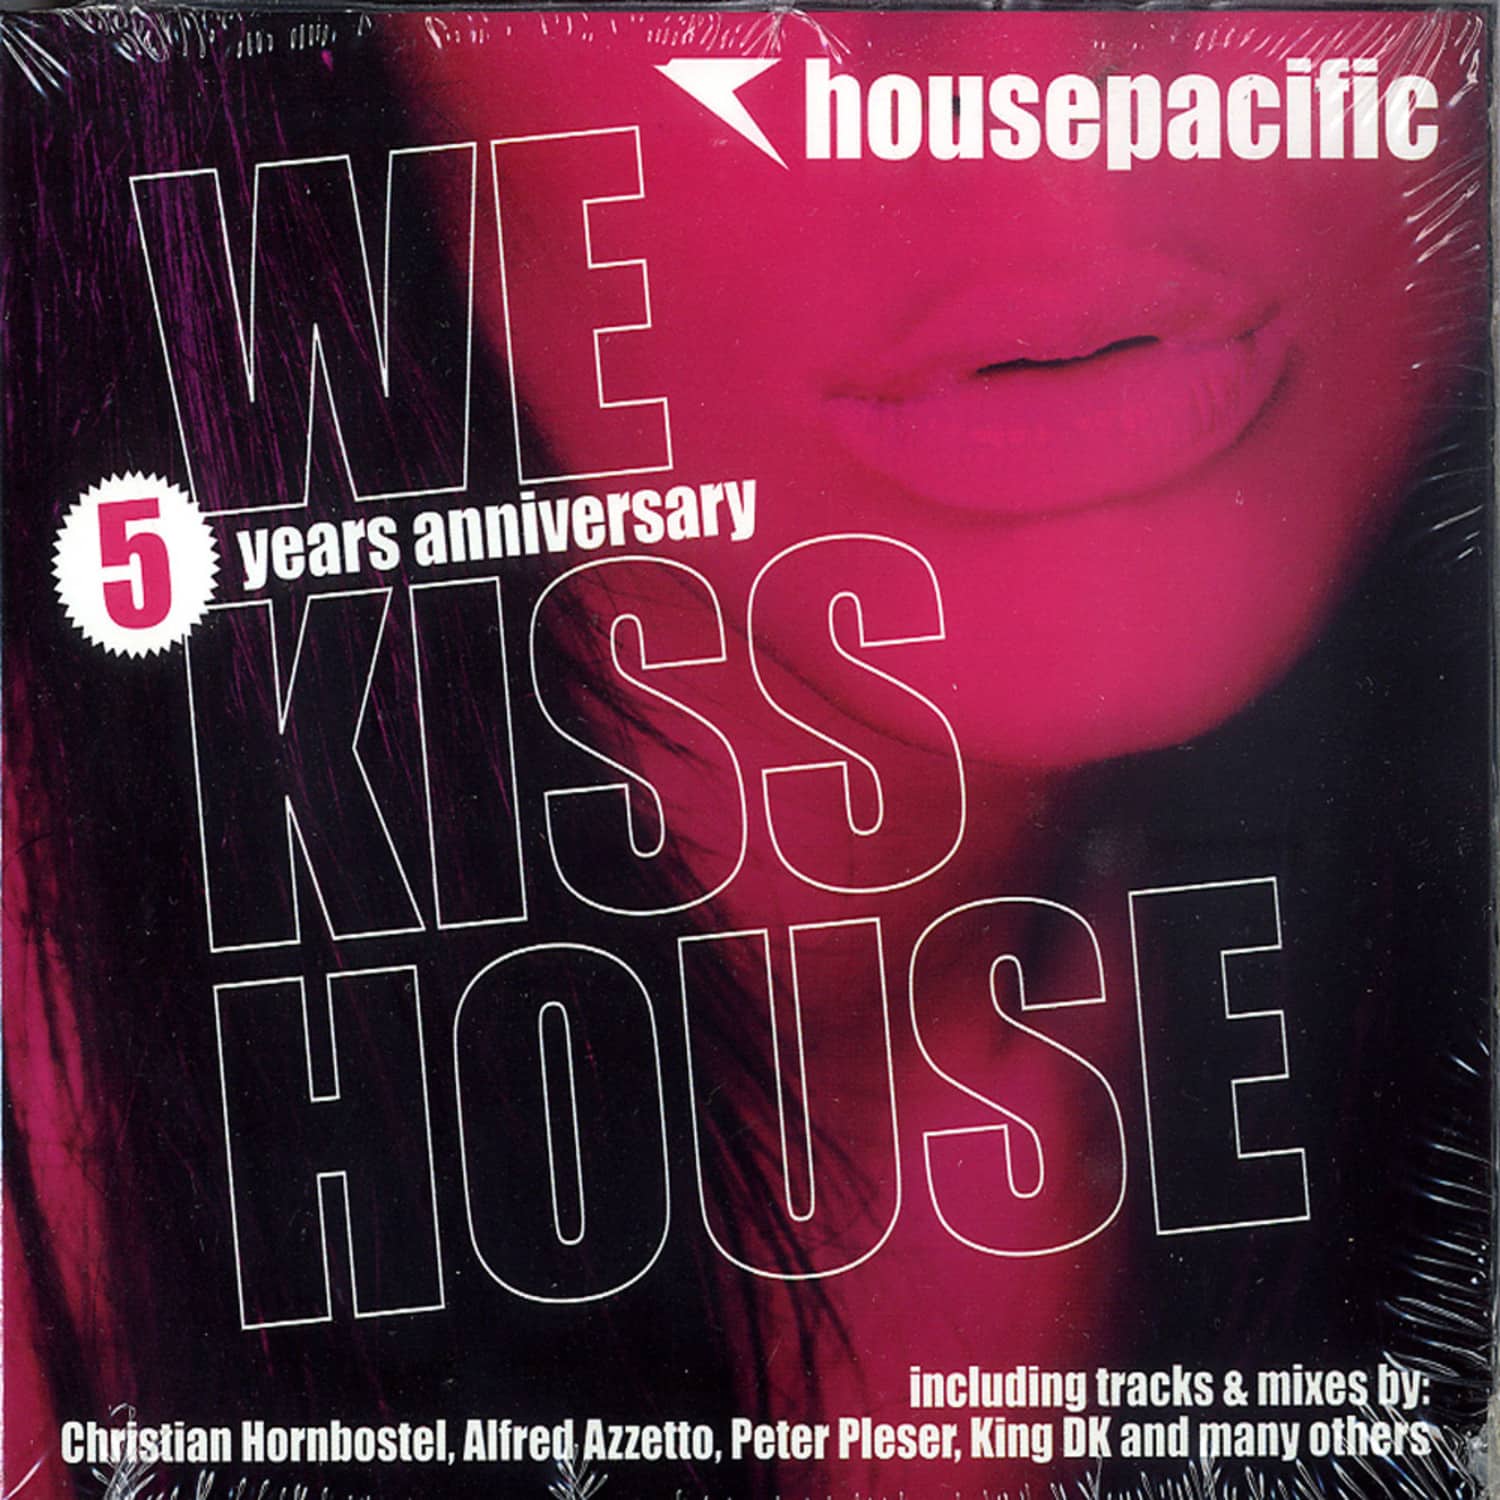 Various / Christian Hornbostel - HOUSEPACIFIC - WE KISS HOUSE 